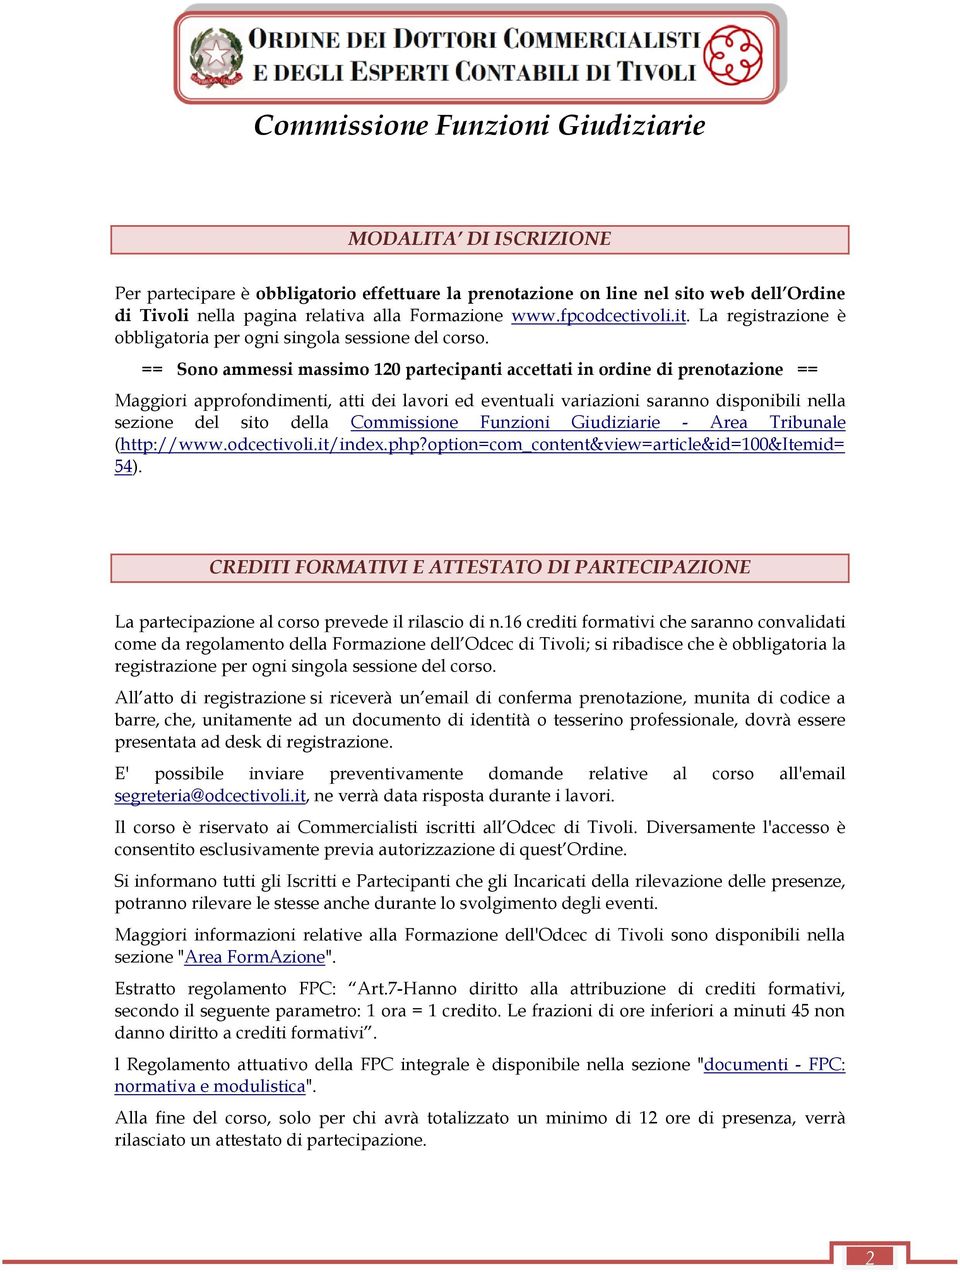 Commissione Funzioni Giudiziarie - Area Tribunale (http://www.odcectivoli.it/index.php?option=com_content&view=article&id=100&itemid= 54).